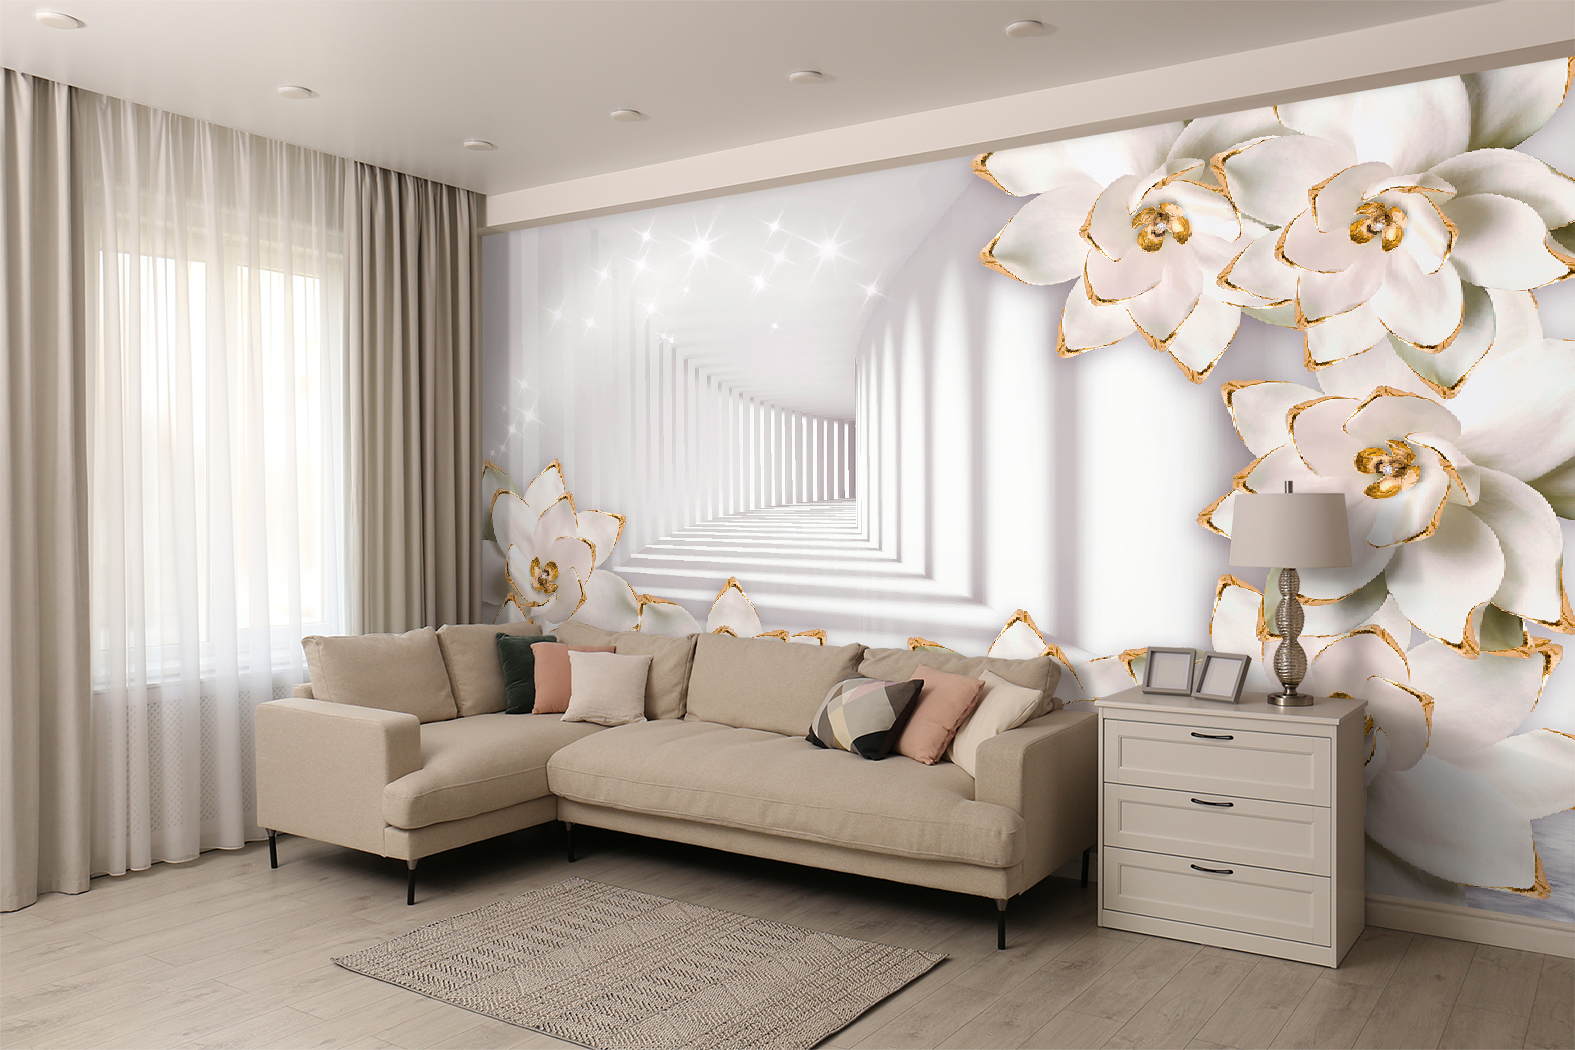 Фотообои Photostena 3D коридор и белые цветы 4,58 x 2,85 м грузди таёжный сбор белые 500 гр